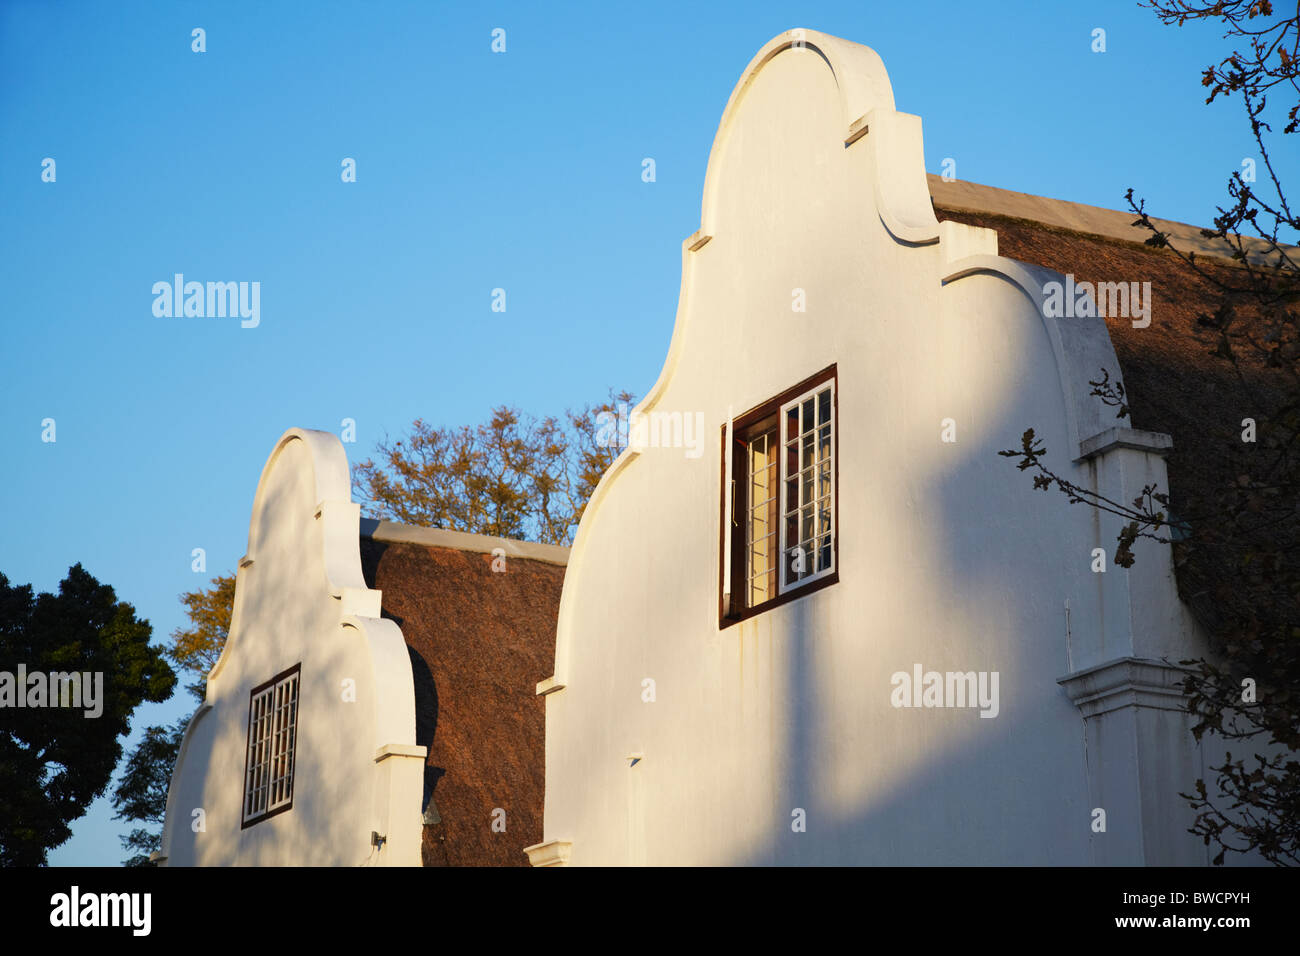 Cape niederländischen Architektur, Stellenbosch, Western Cape, Südafrika Stockfoto